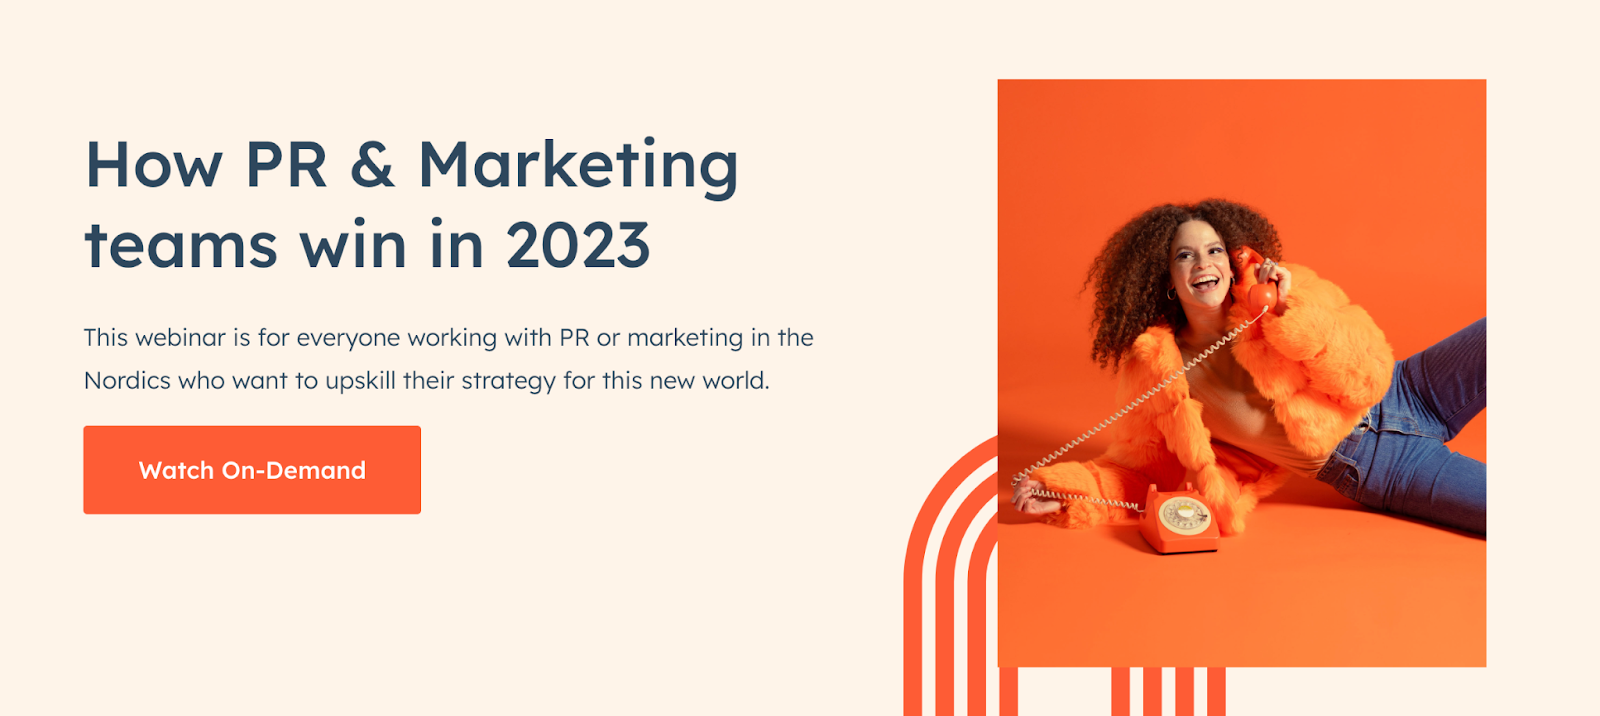 Webinar Title-How PR & Marketing teams win in 2023